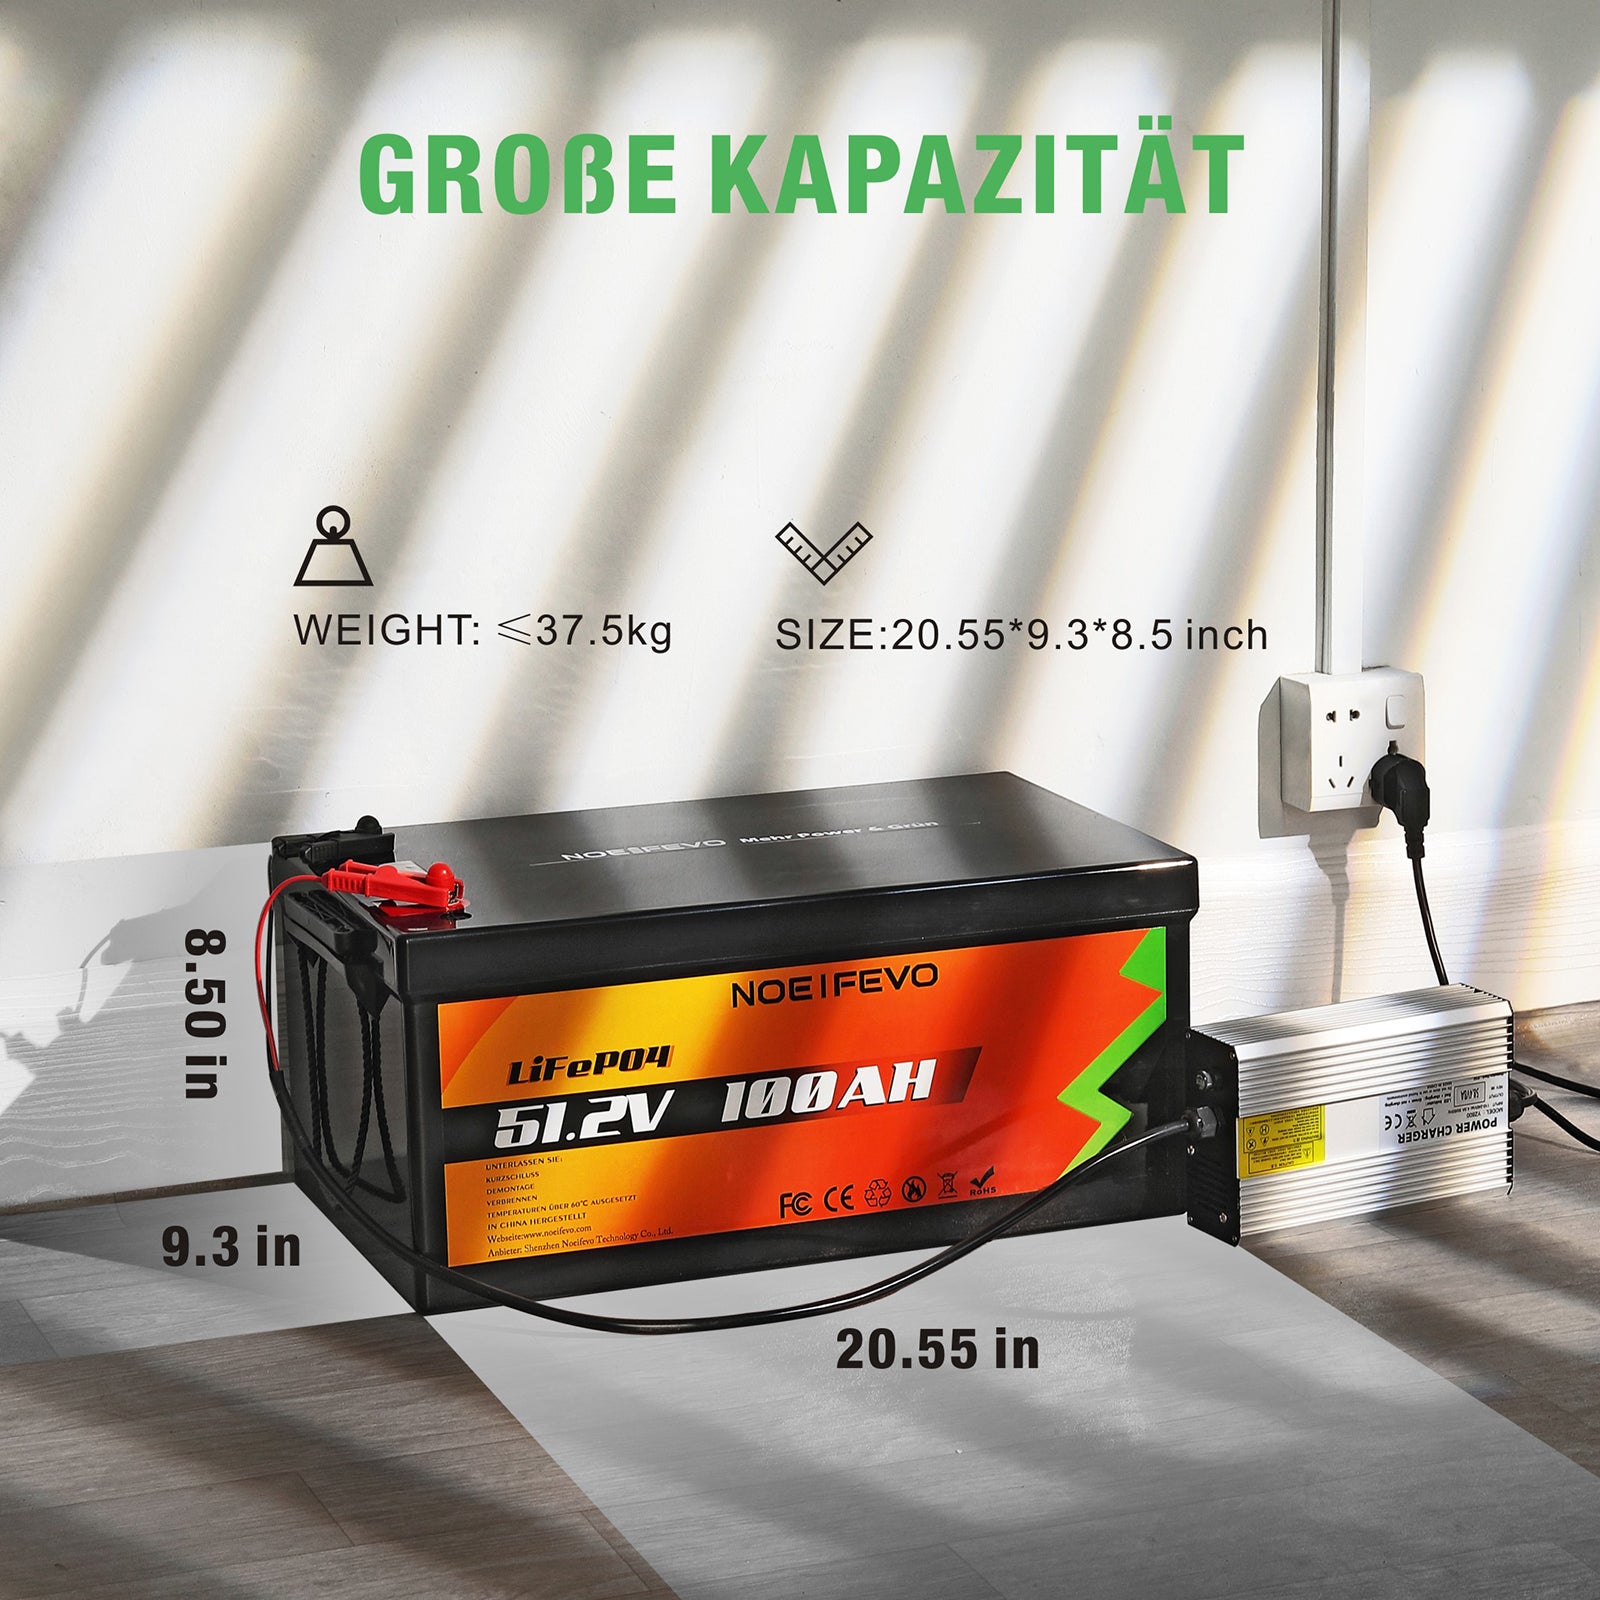 NOEIFEVO D48100 51.2V 100AH Lithium Iron Phosphate Battery LiFePO4 Bat –  Smart LifePO4 Batterie & Heimspeicherung von Energie & Intelligentes  Ladegerät